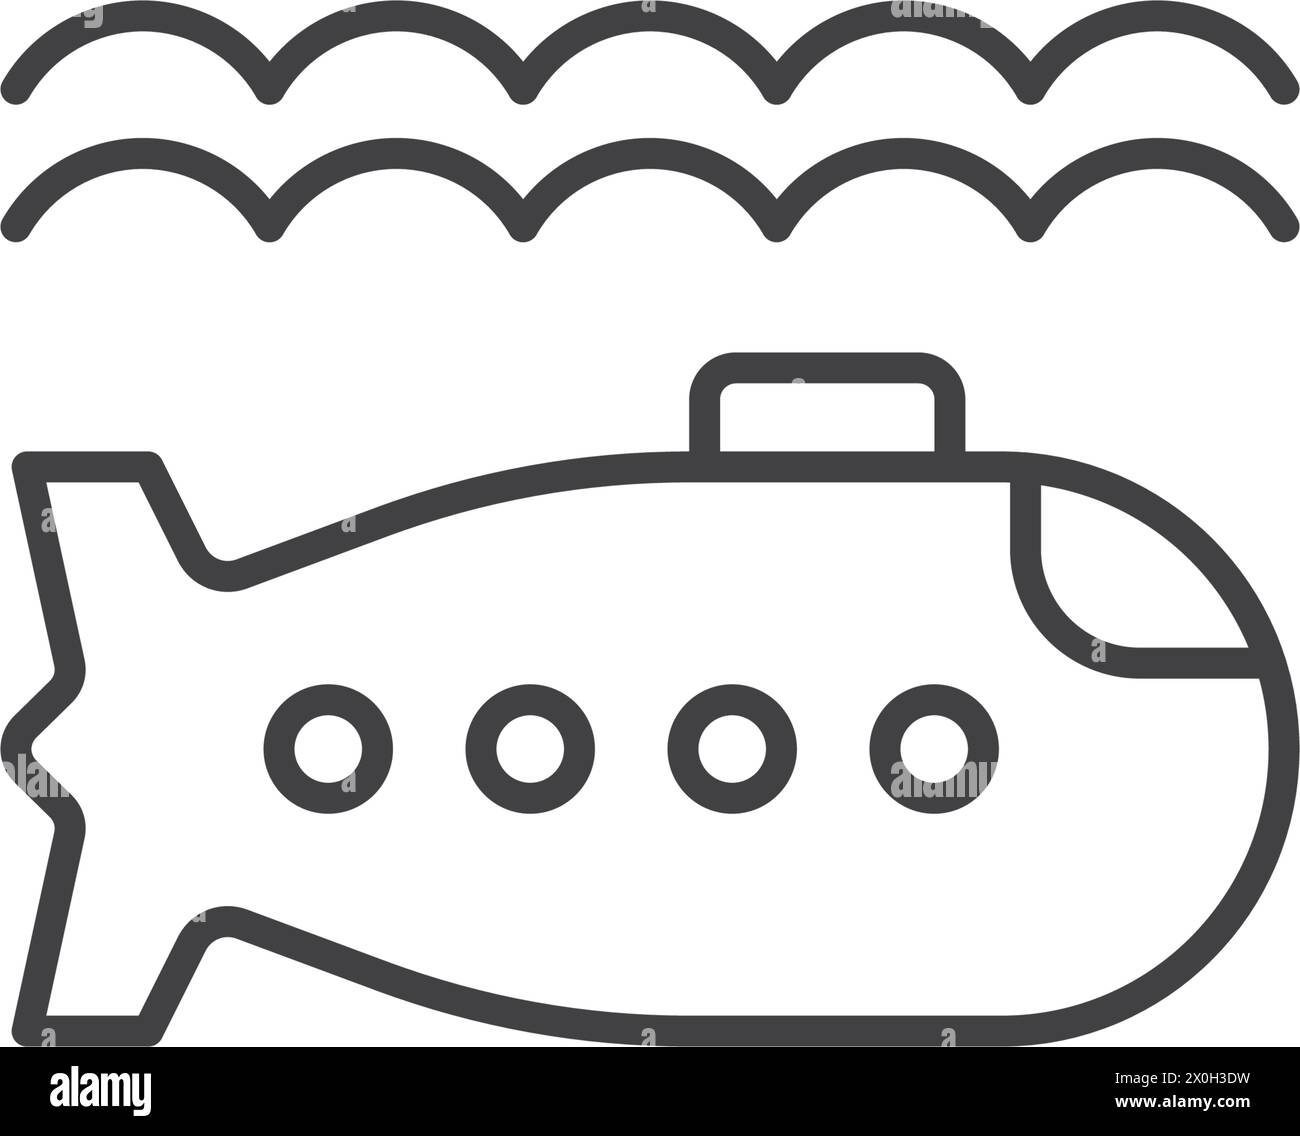 U-Boot-Ikone im flachen Stil. Bathyscaphe-Vektorillustration auf isoliertem Hintergrund. Verkehrsschild Geschäftskonzept. Stock Vektor